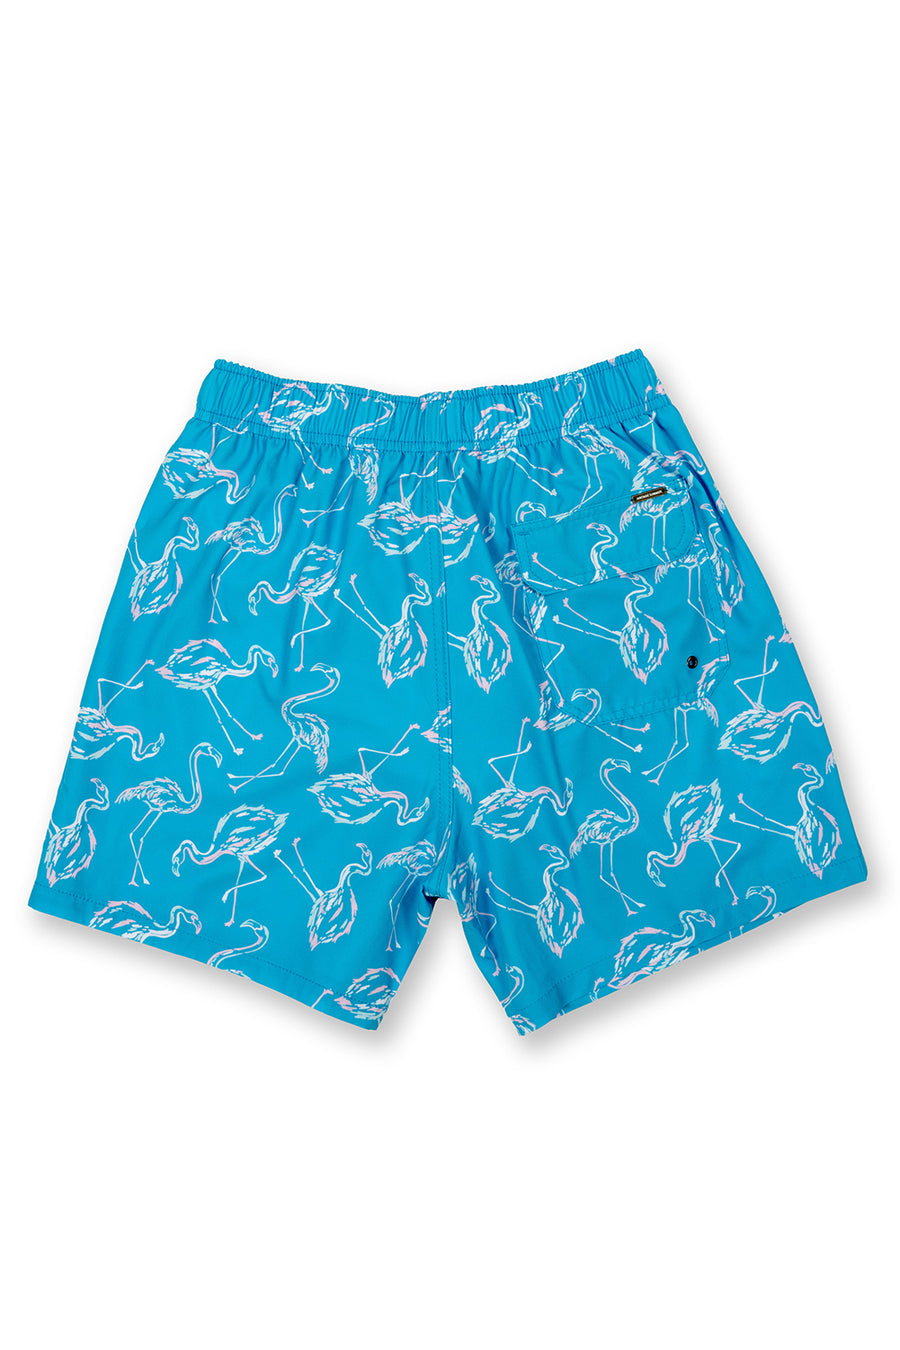 Men's Aqua Swim Trunks Dry Fast 4 Ways Stretch, Flamingo Print